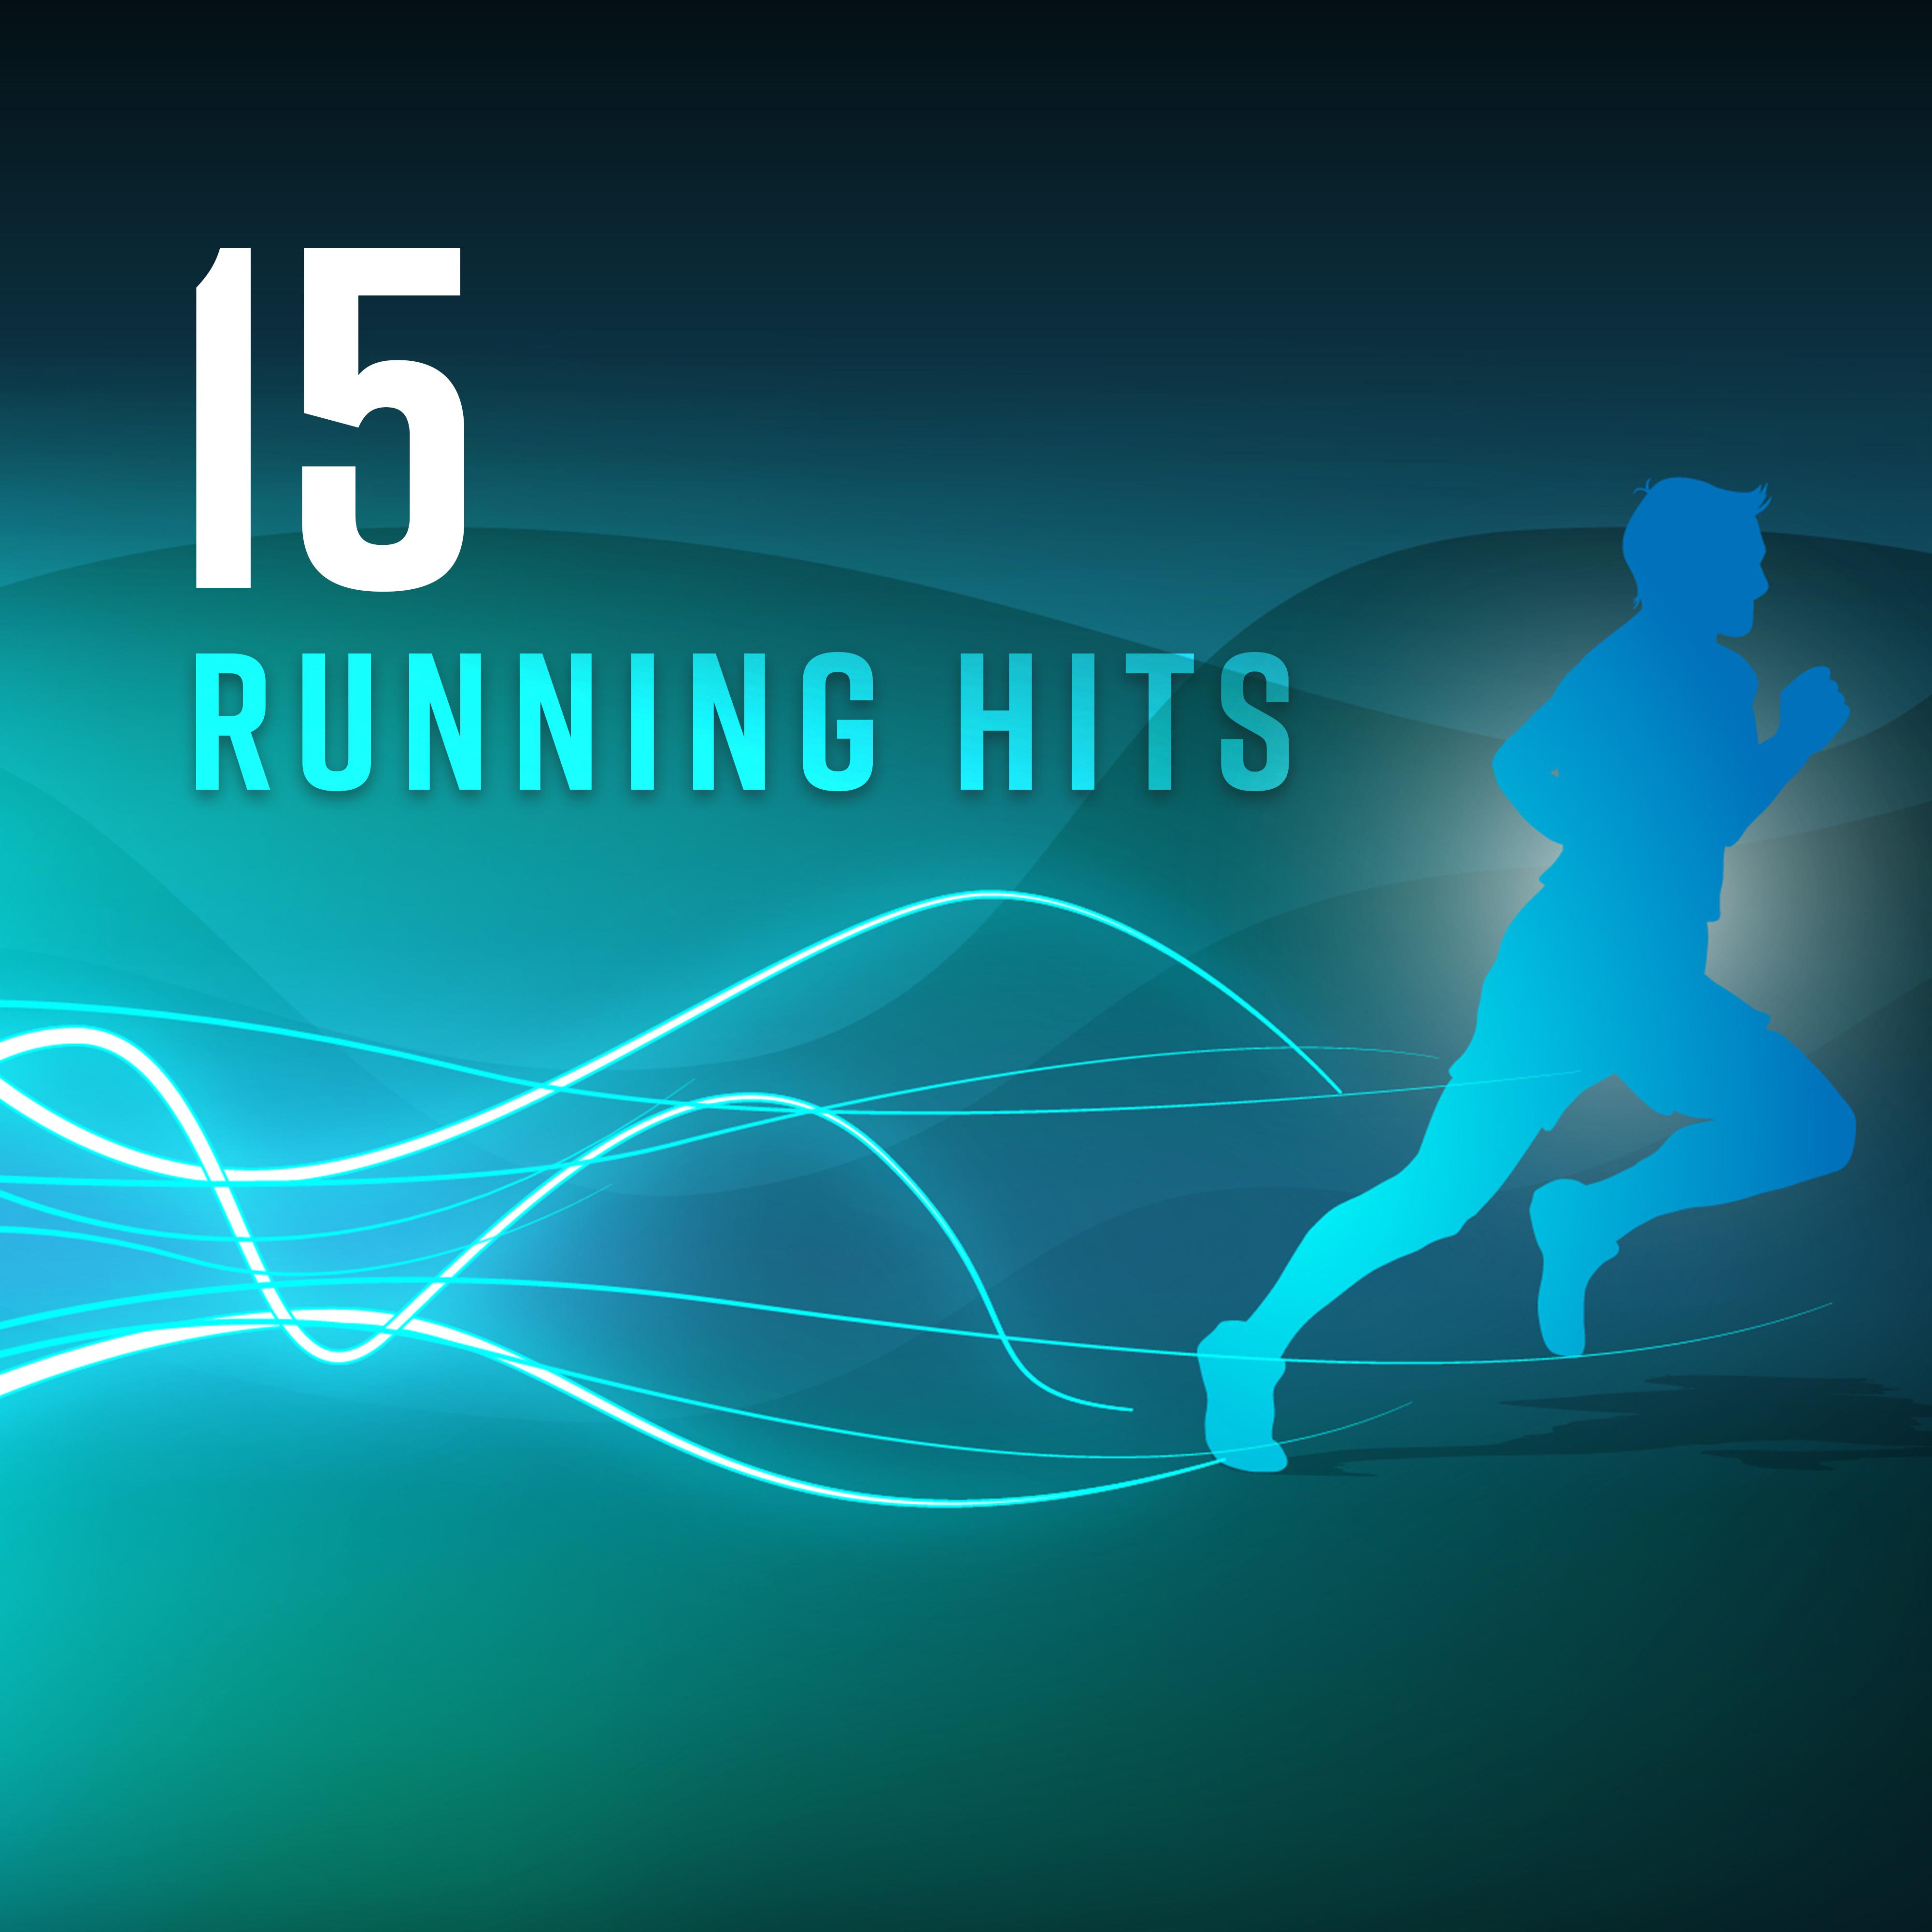 15 Running Hits